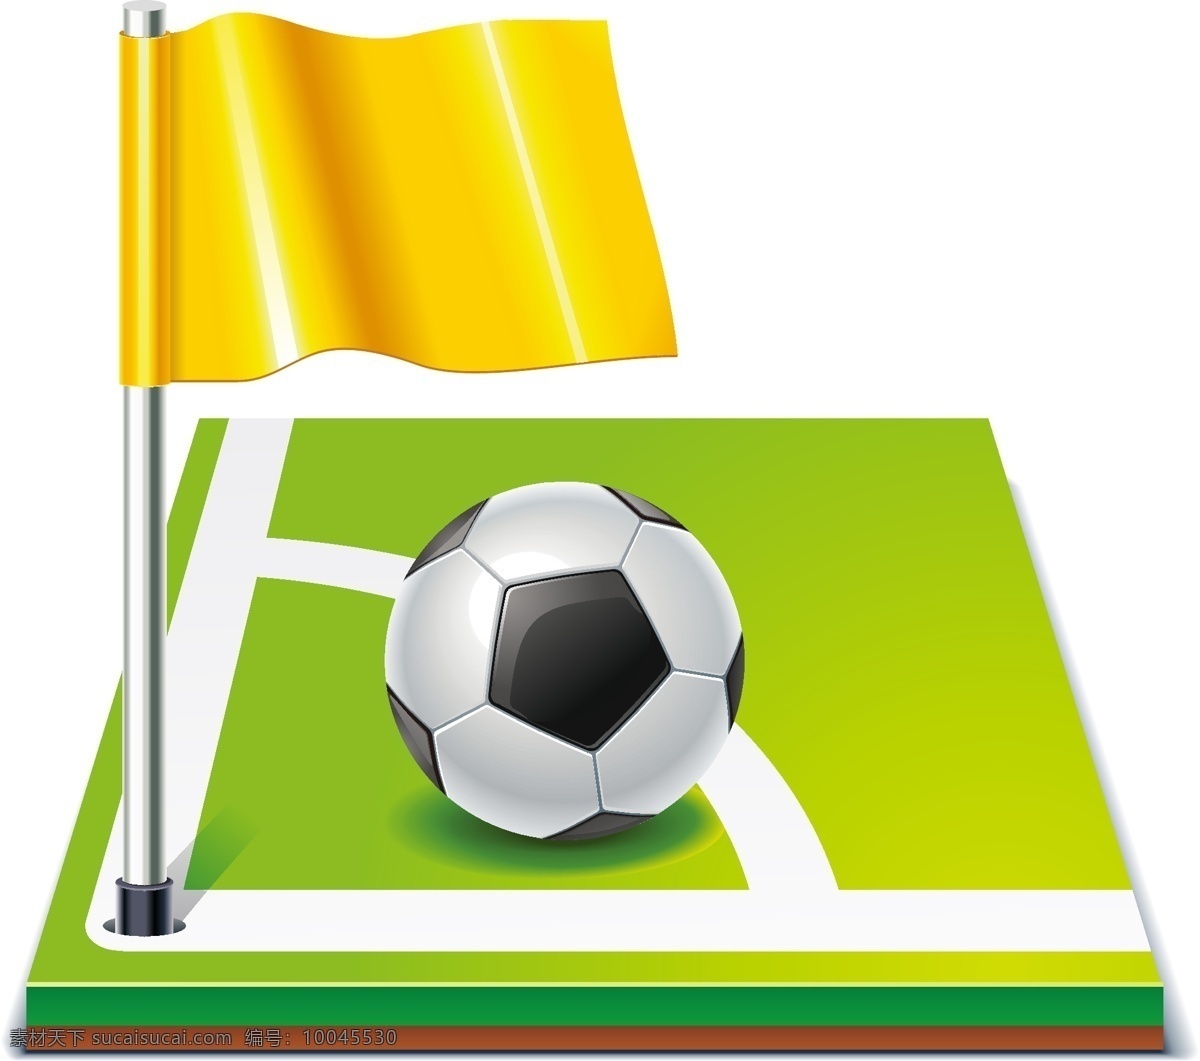 矢量 足球比赛 场地 元素 手绘 比赛场地 足球 小旗 世界杯 ai元素 免扣元素